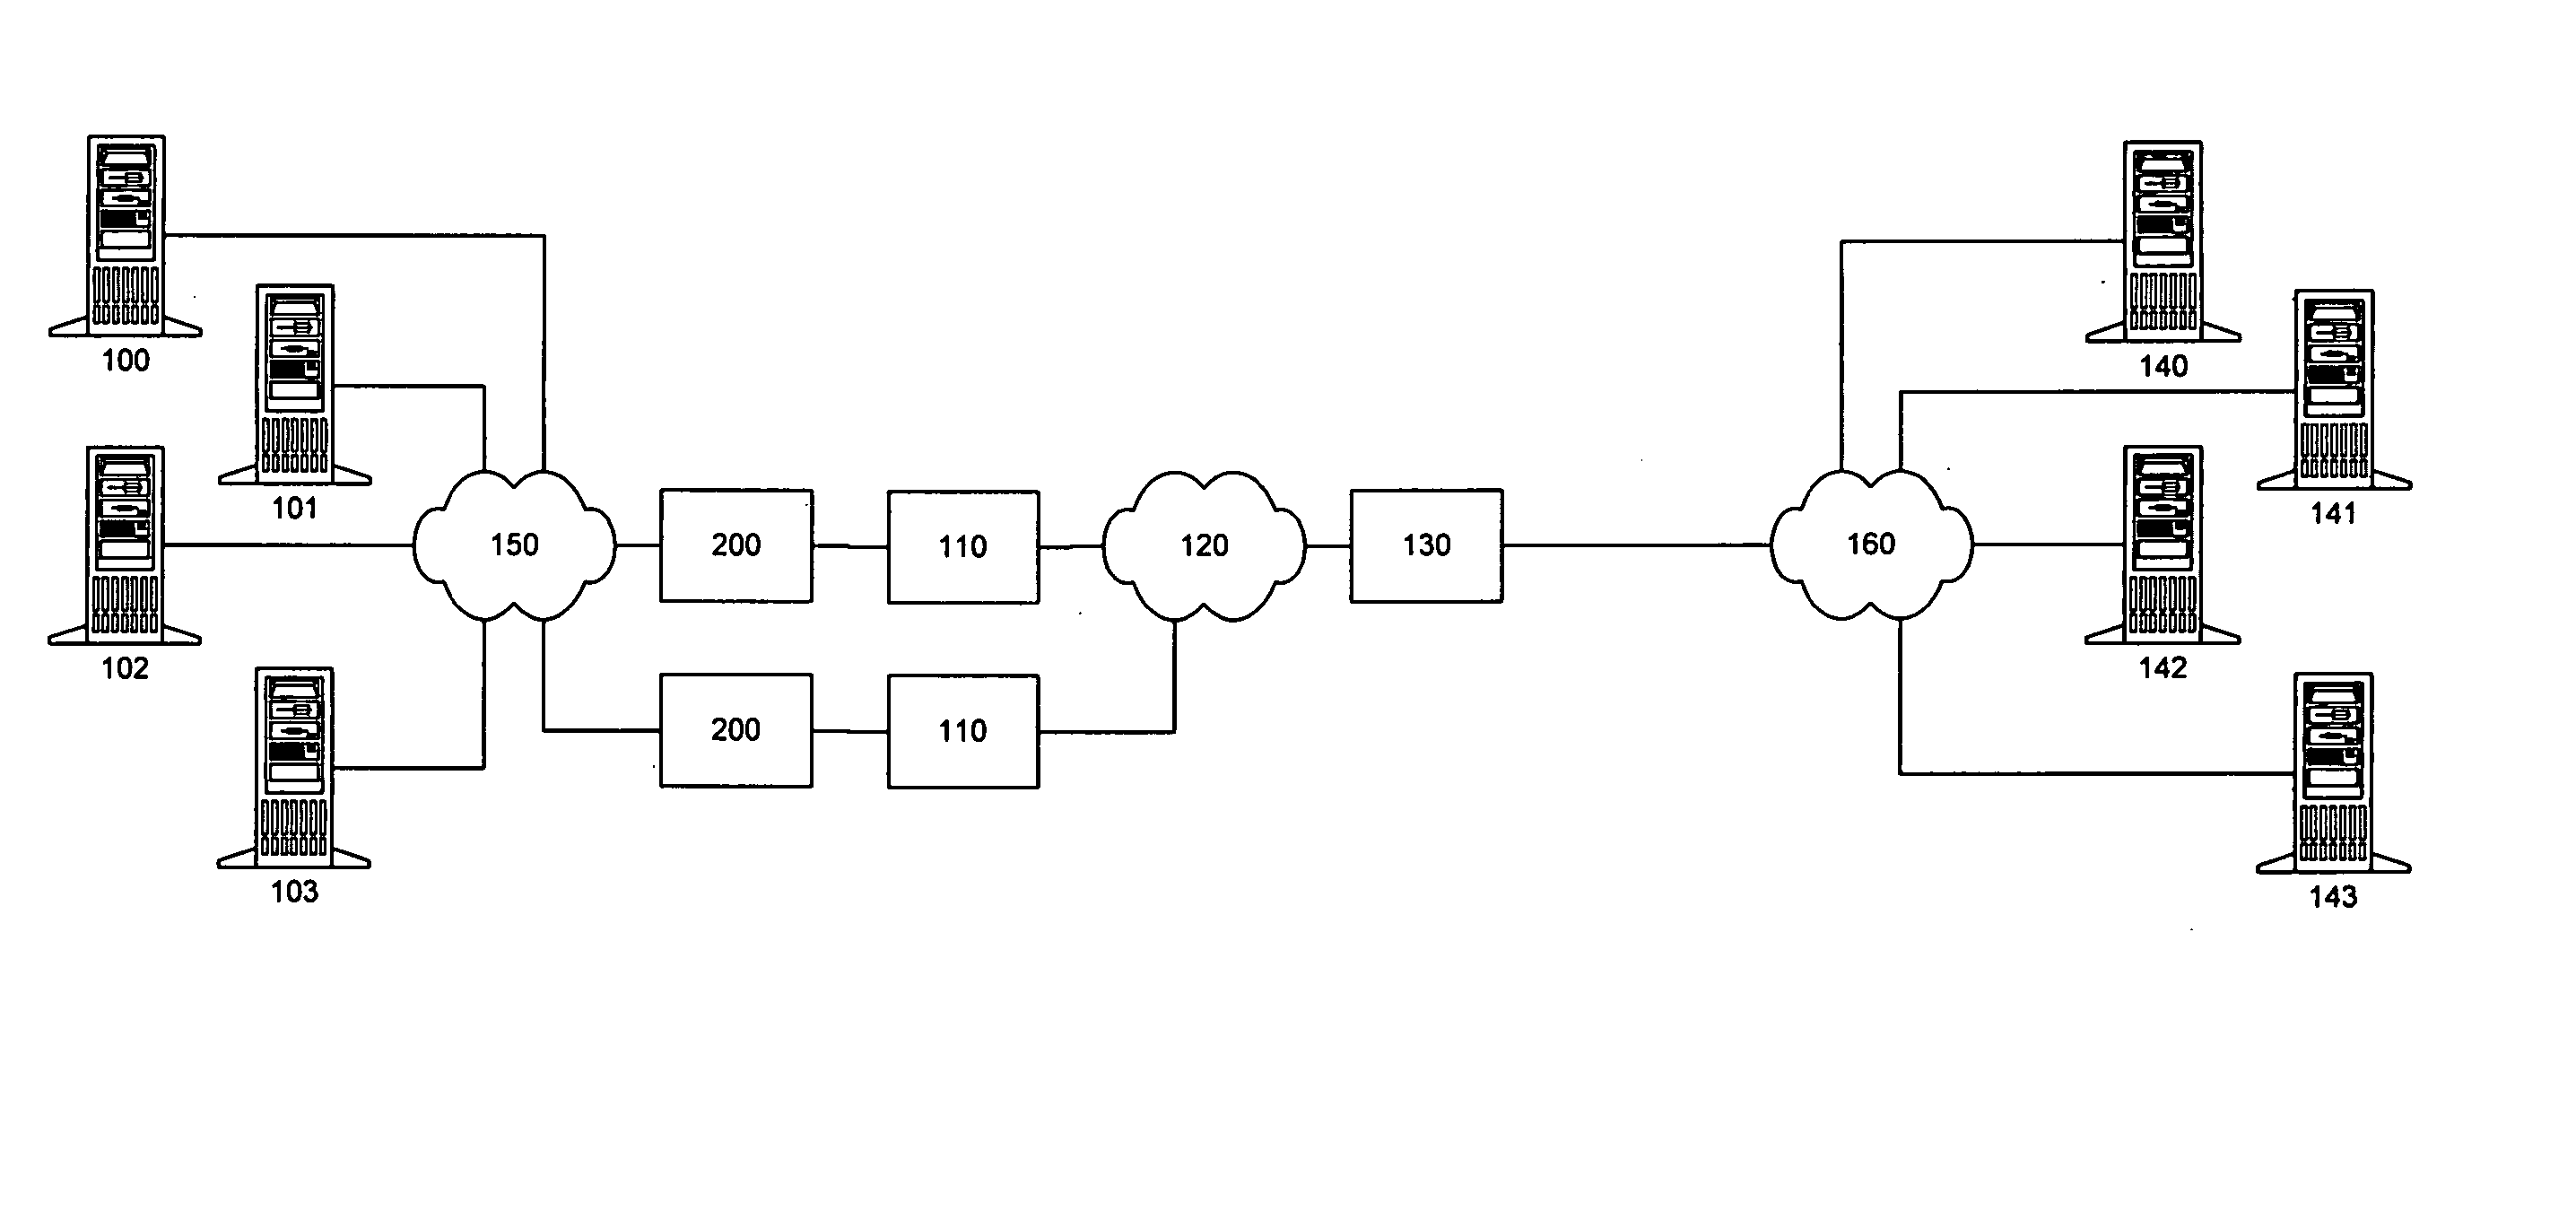 Method of determining path maximum transmission unit